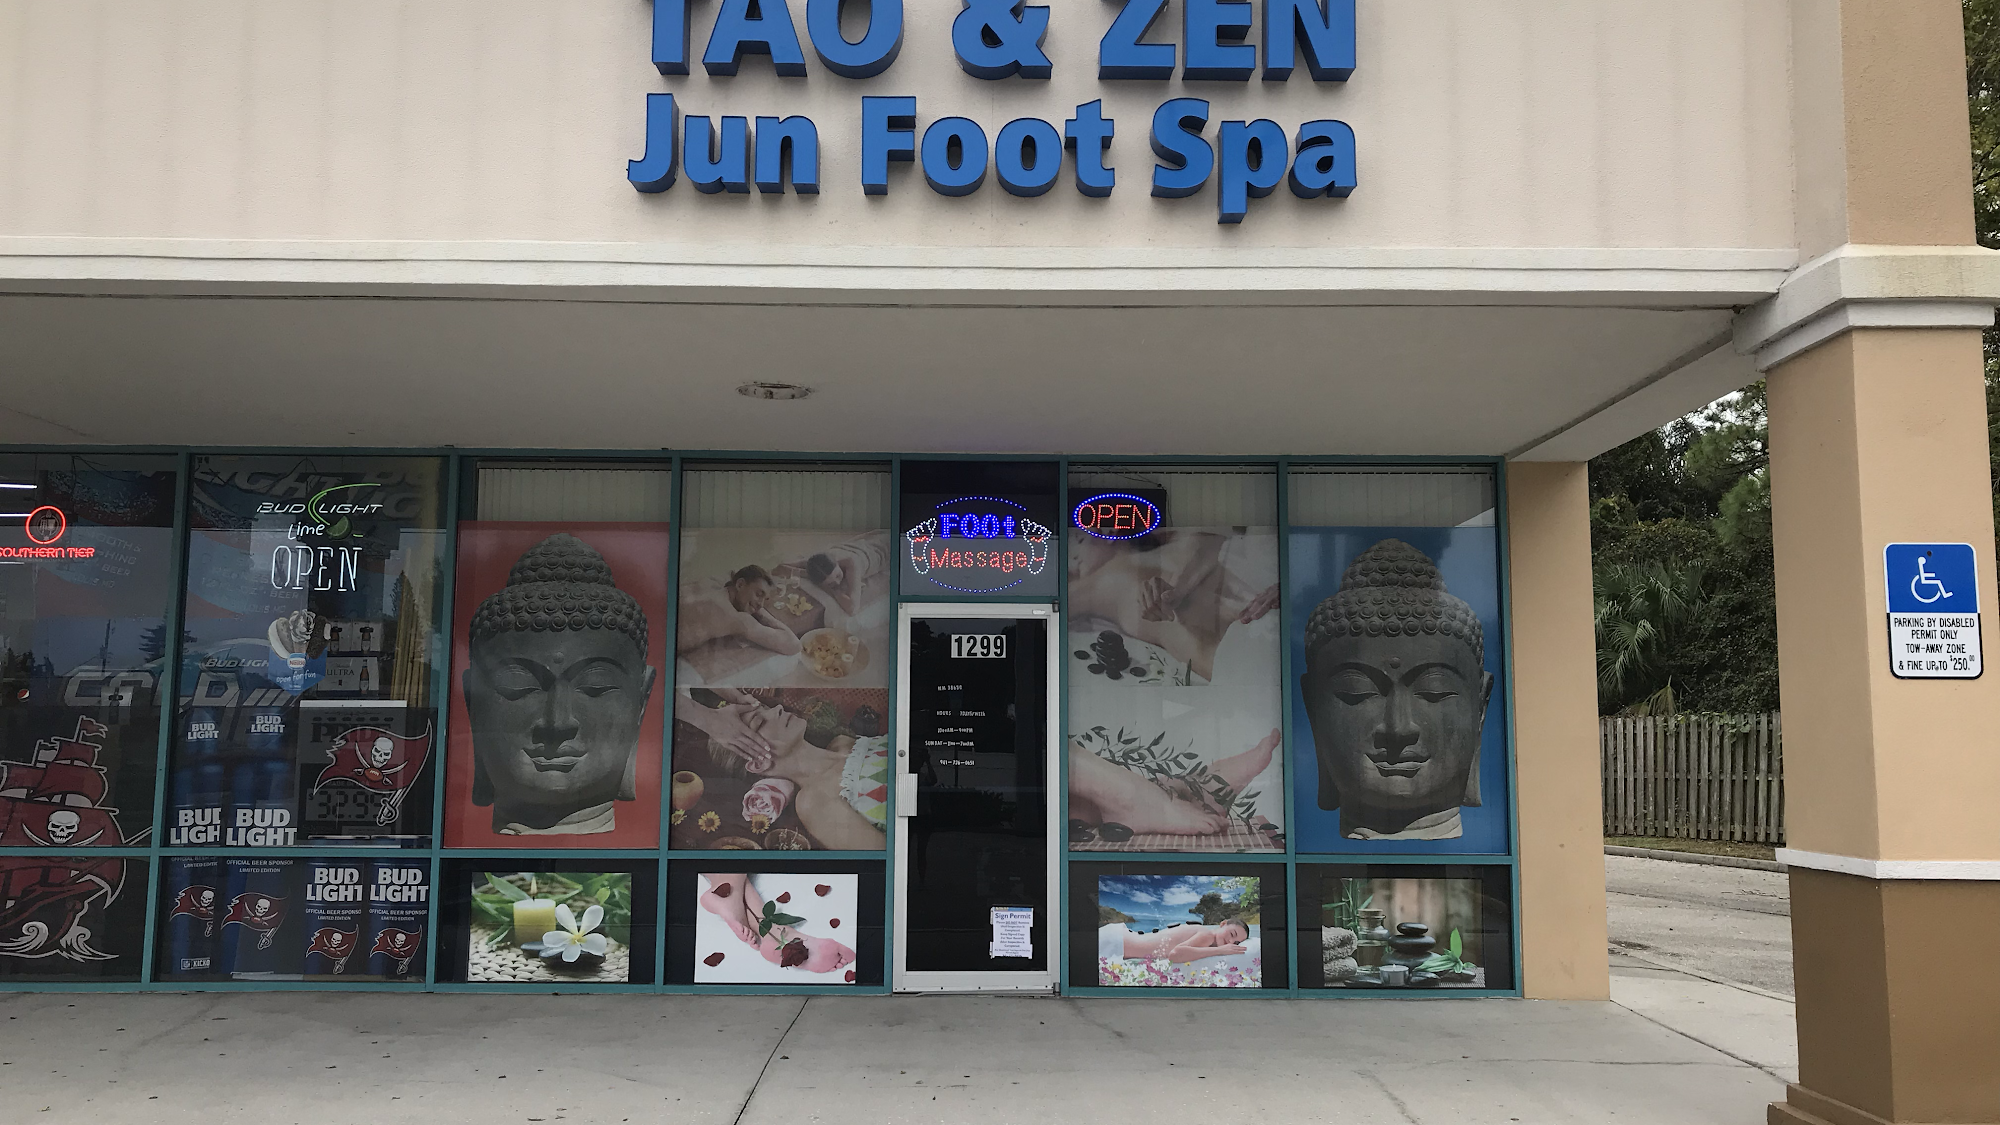 Tao & Zen Jun Foot Spa